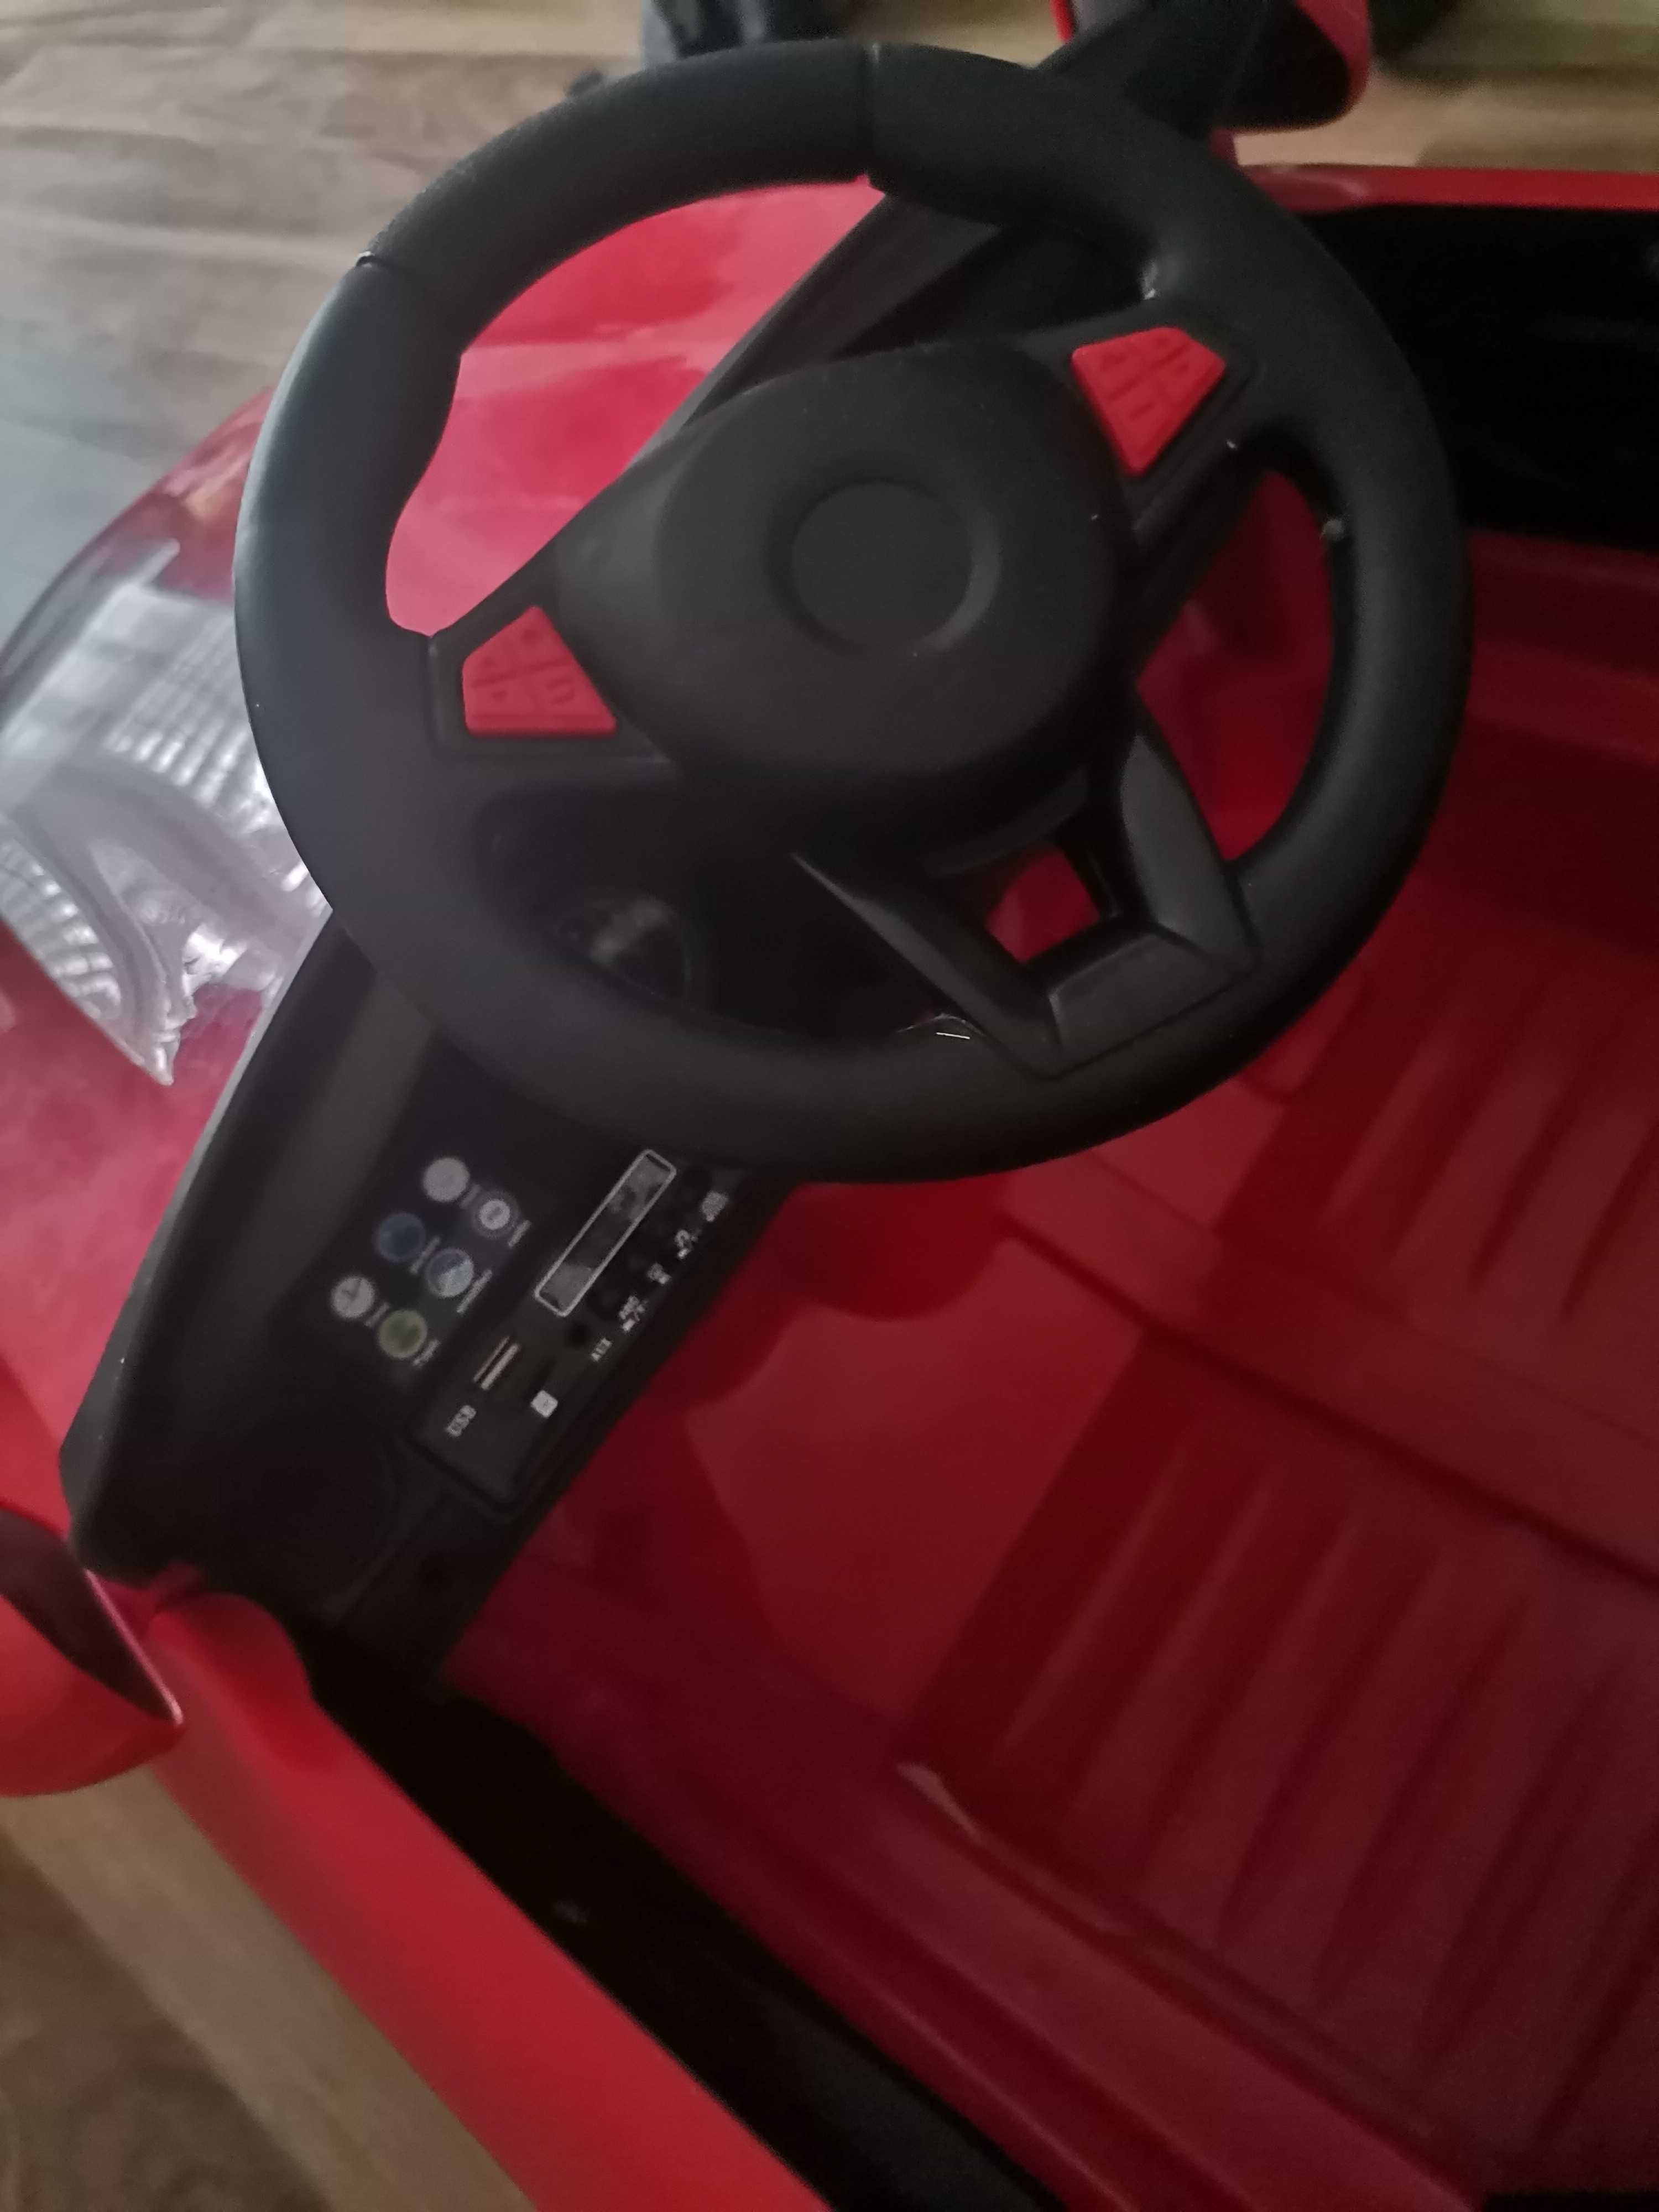 Czerwone auto na akumulator pilot światło dźwięk muzyka